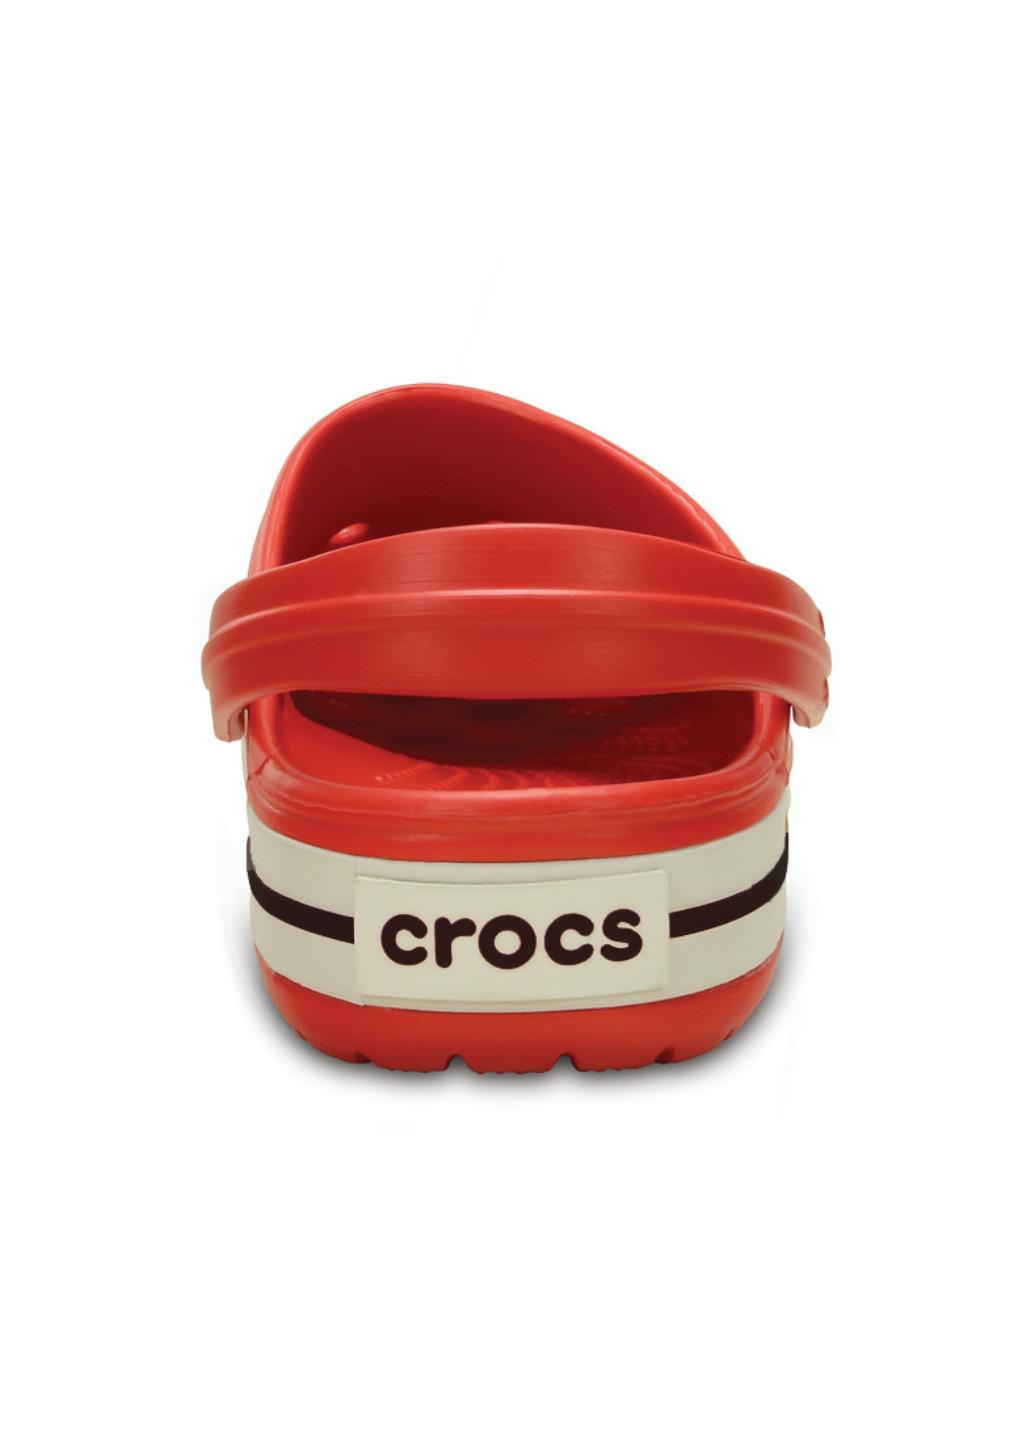 Красные сабо Crocs